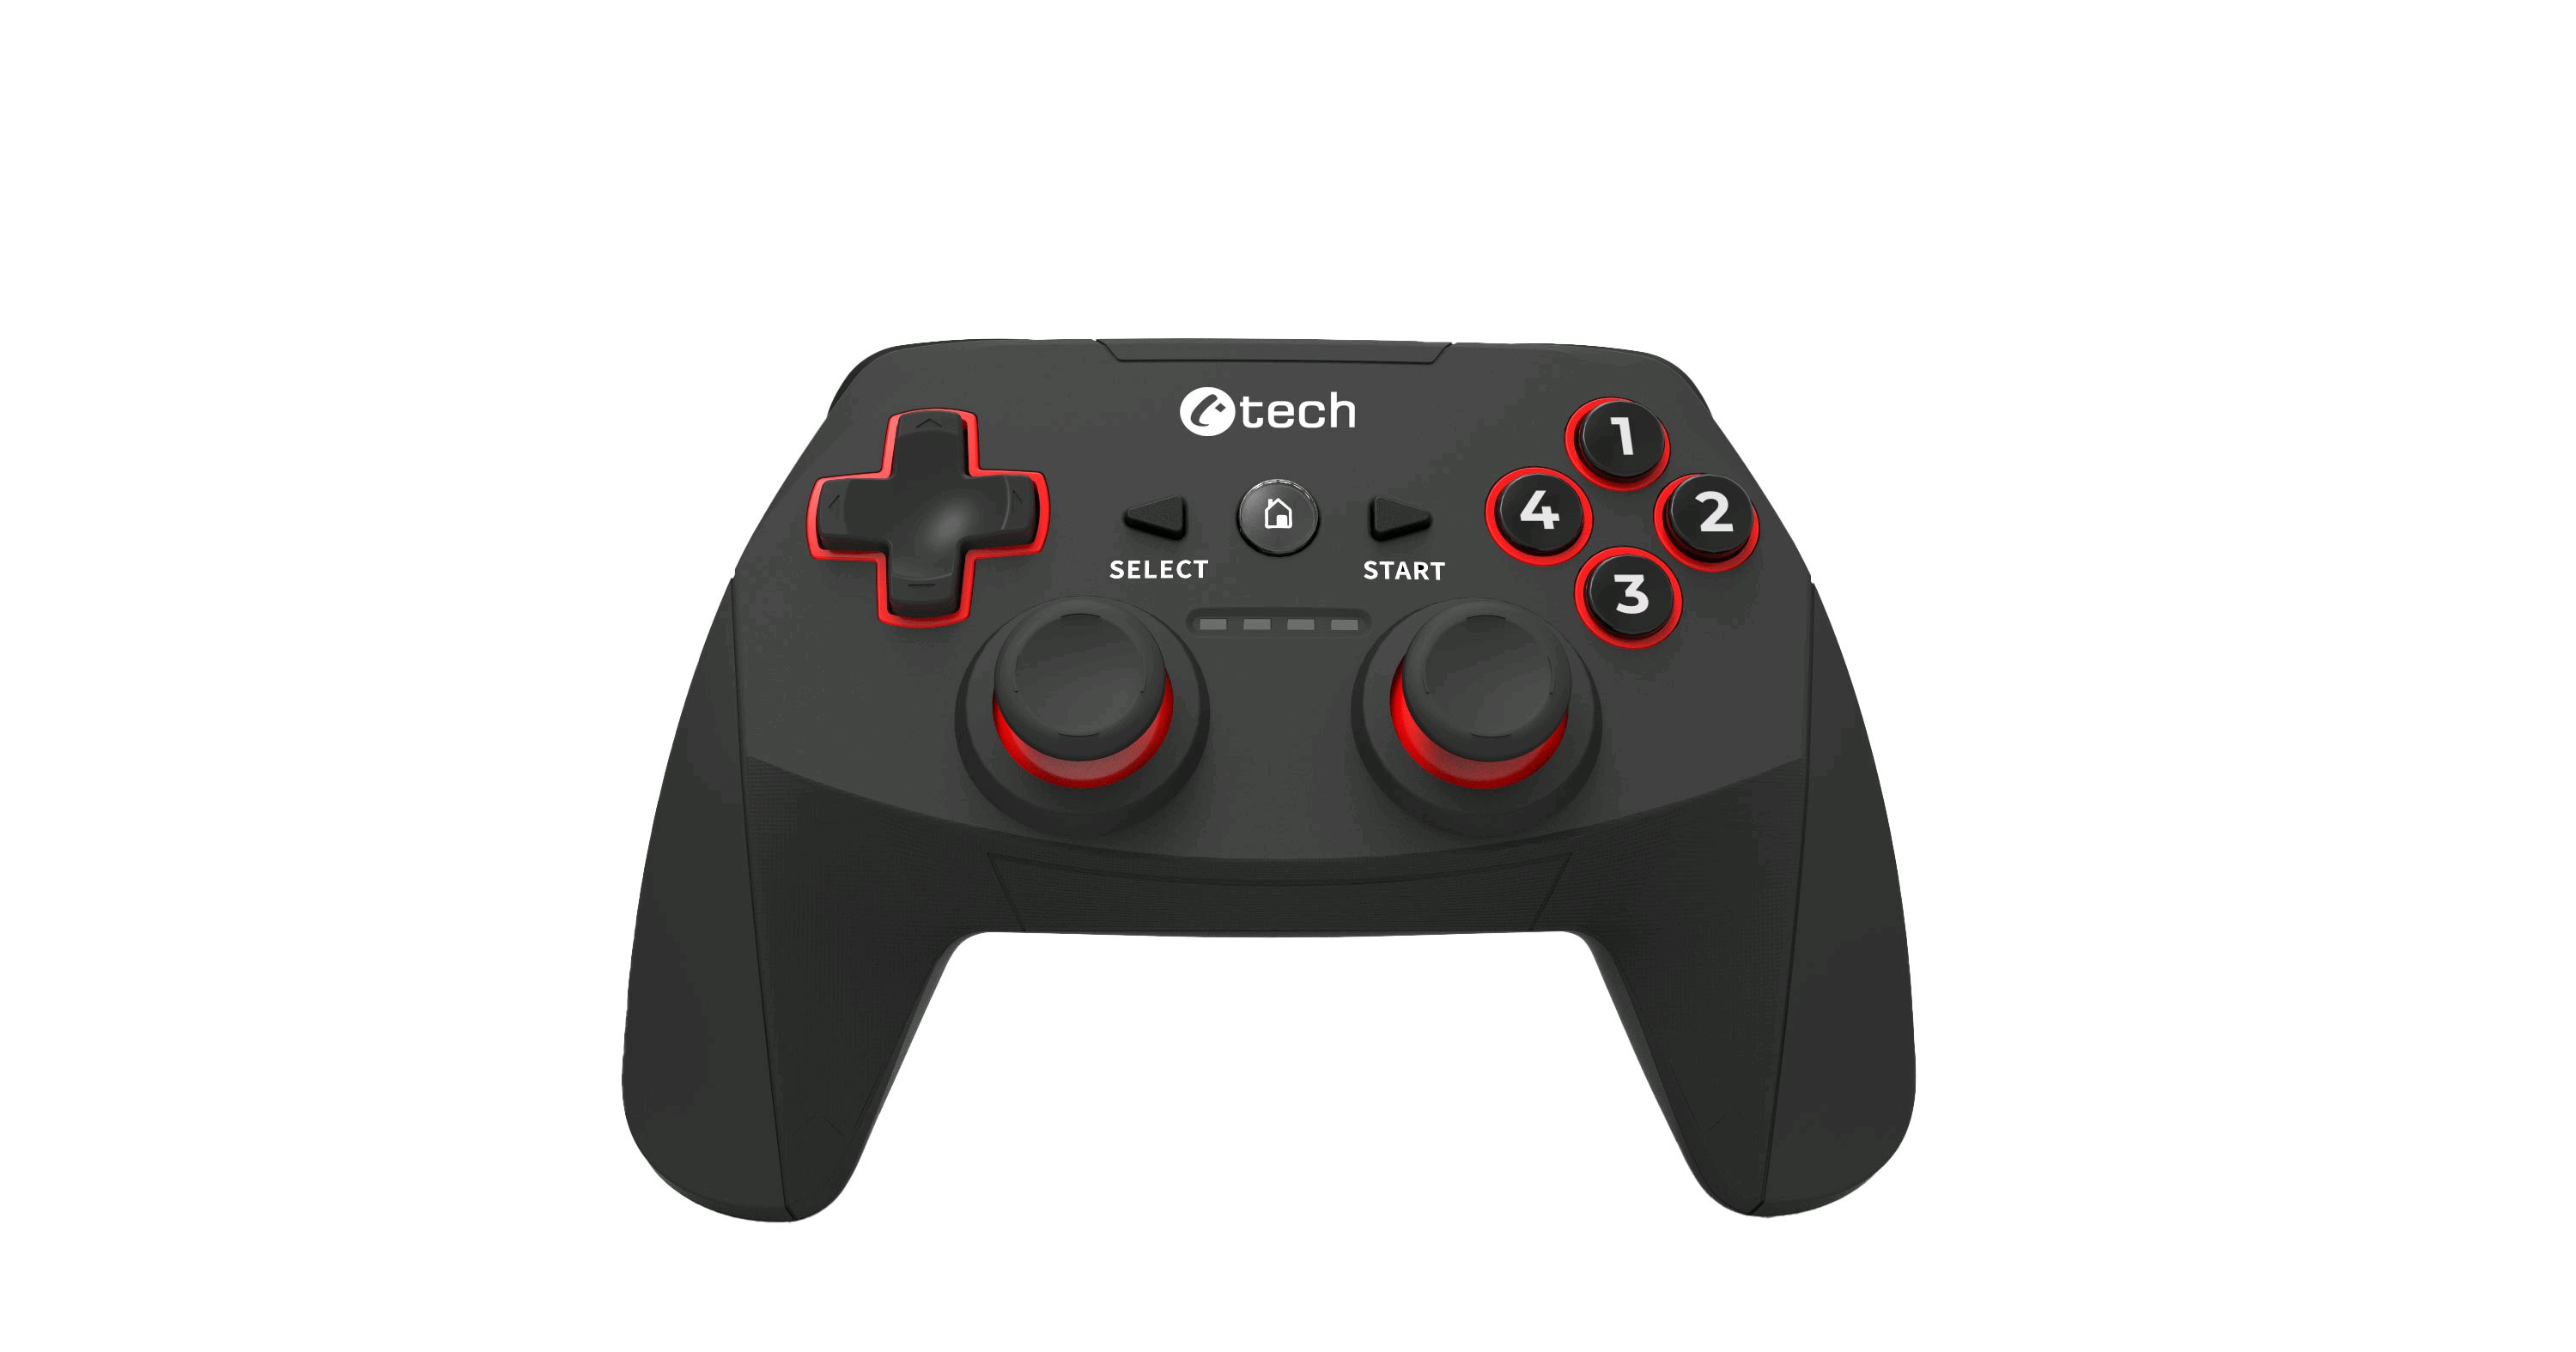 Gamepad C-TECH Khort pre PC/ PS3/ Android, 2x analóg, X-input, vibračný, bezdrôtový, USB